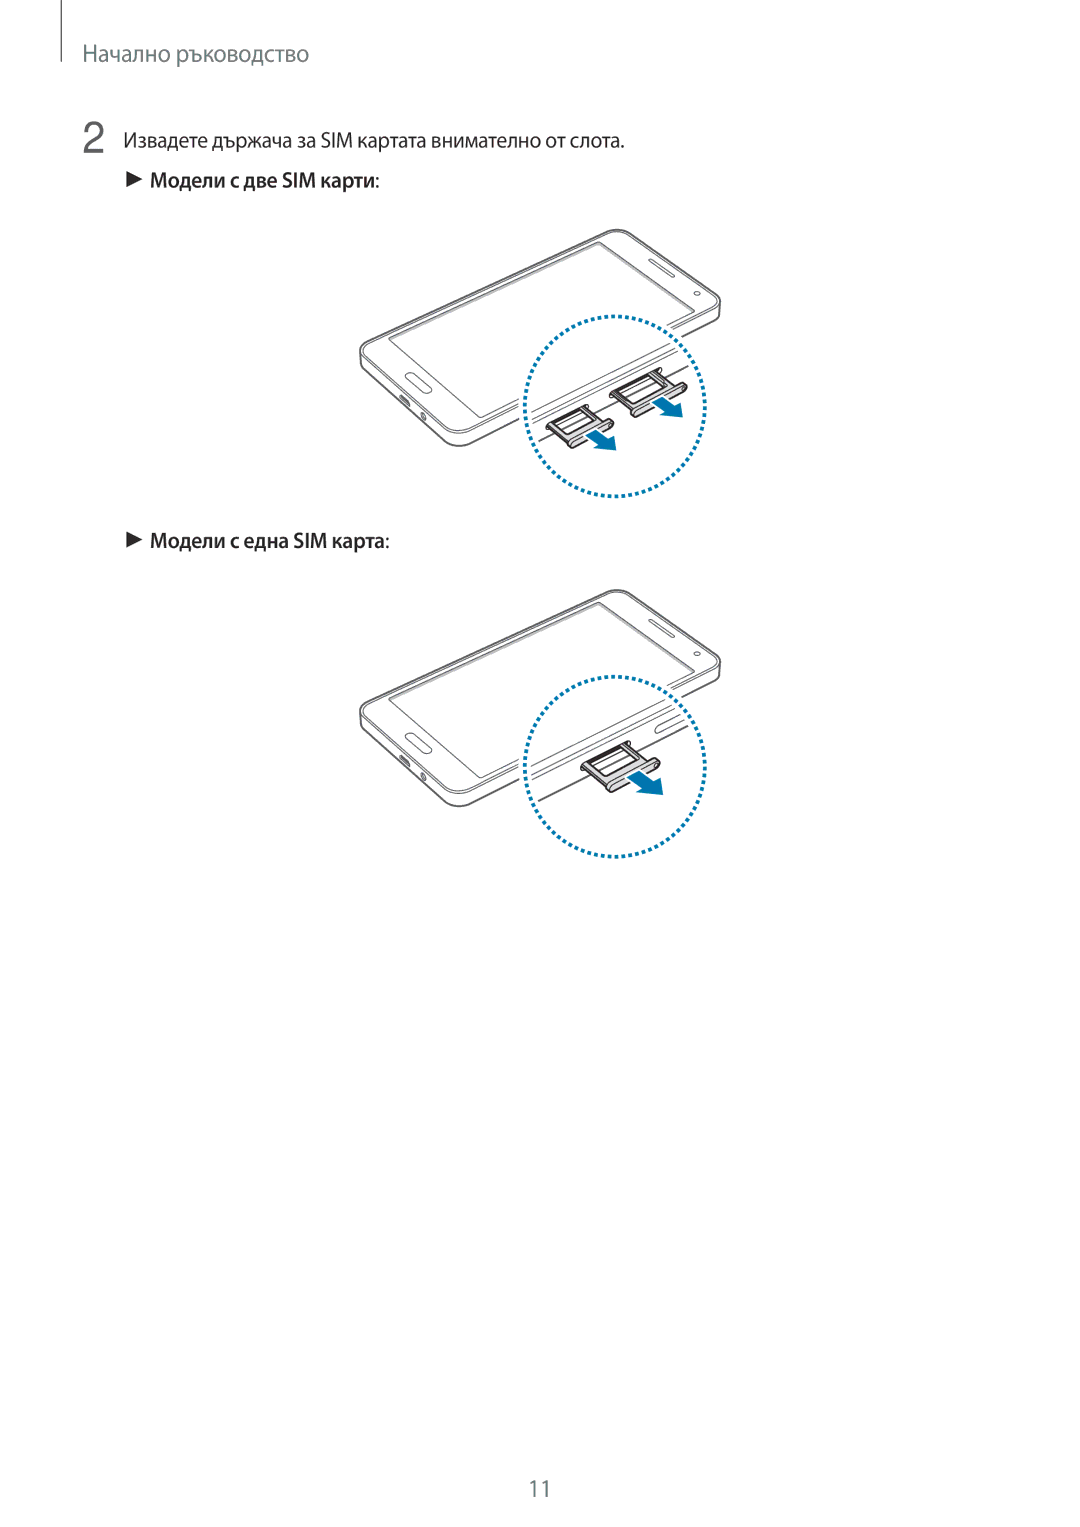 Samsung SM-A500FZDUBGL manual Извадете държача за SIM картата внимателно от слота 